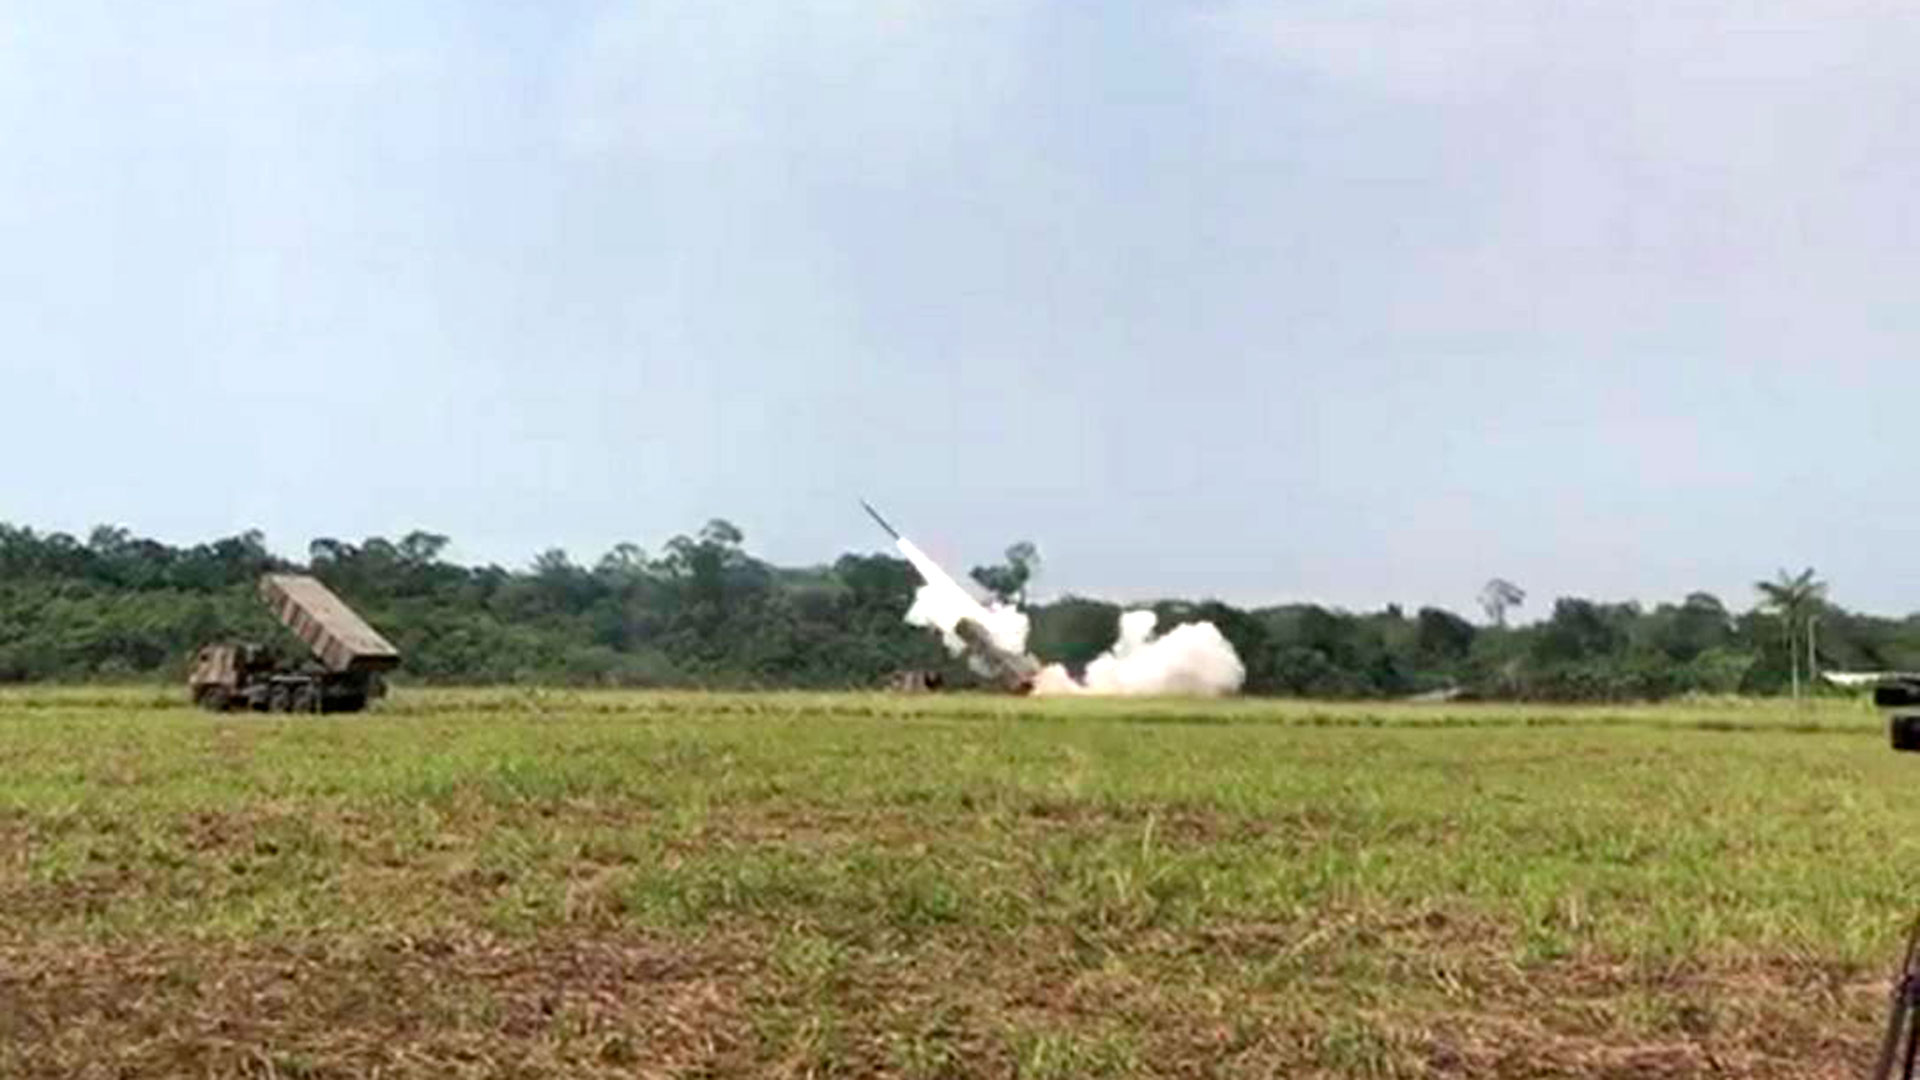 Lanzacohetes múltiples Astros MK6 durante los ejercicios militares de Brasil en la frontera con Venezuela